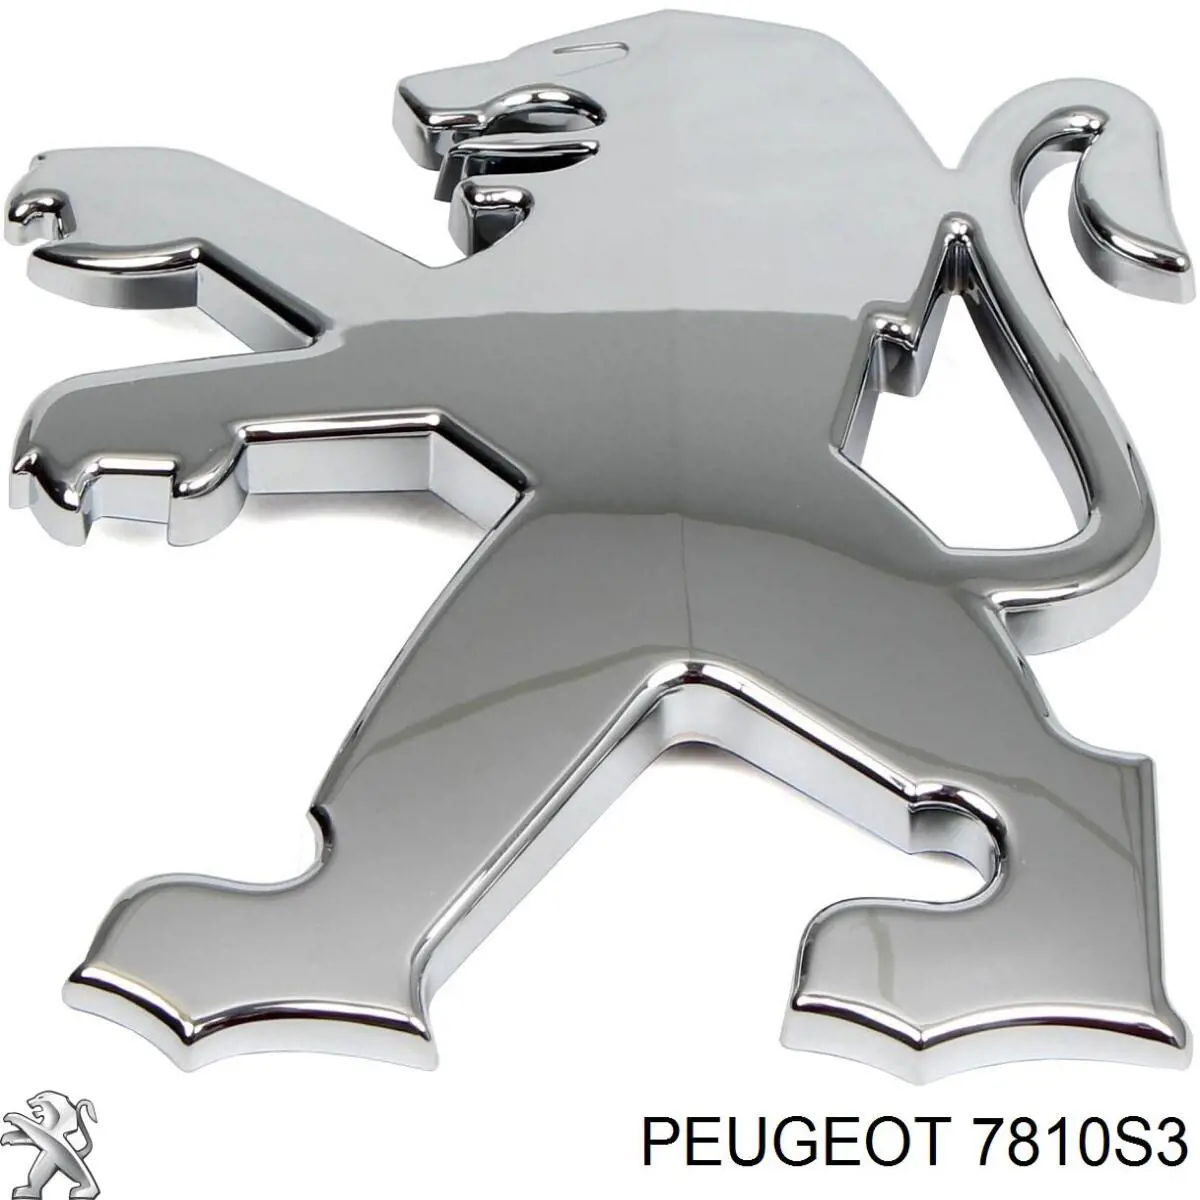 7810S3 Peugeot/Citroen emblema de tampa de porta-malas (emblema de firma)